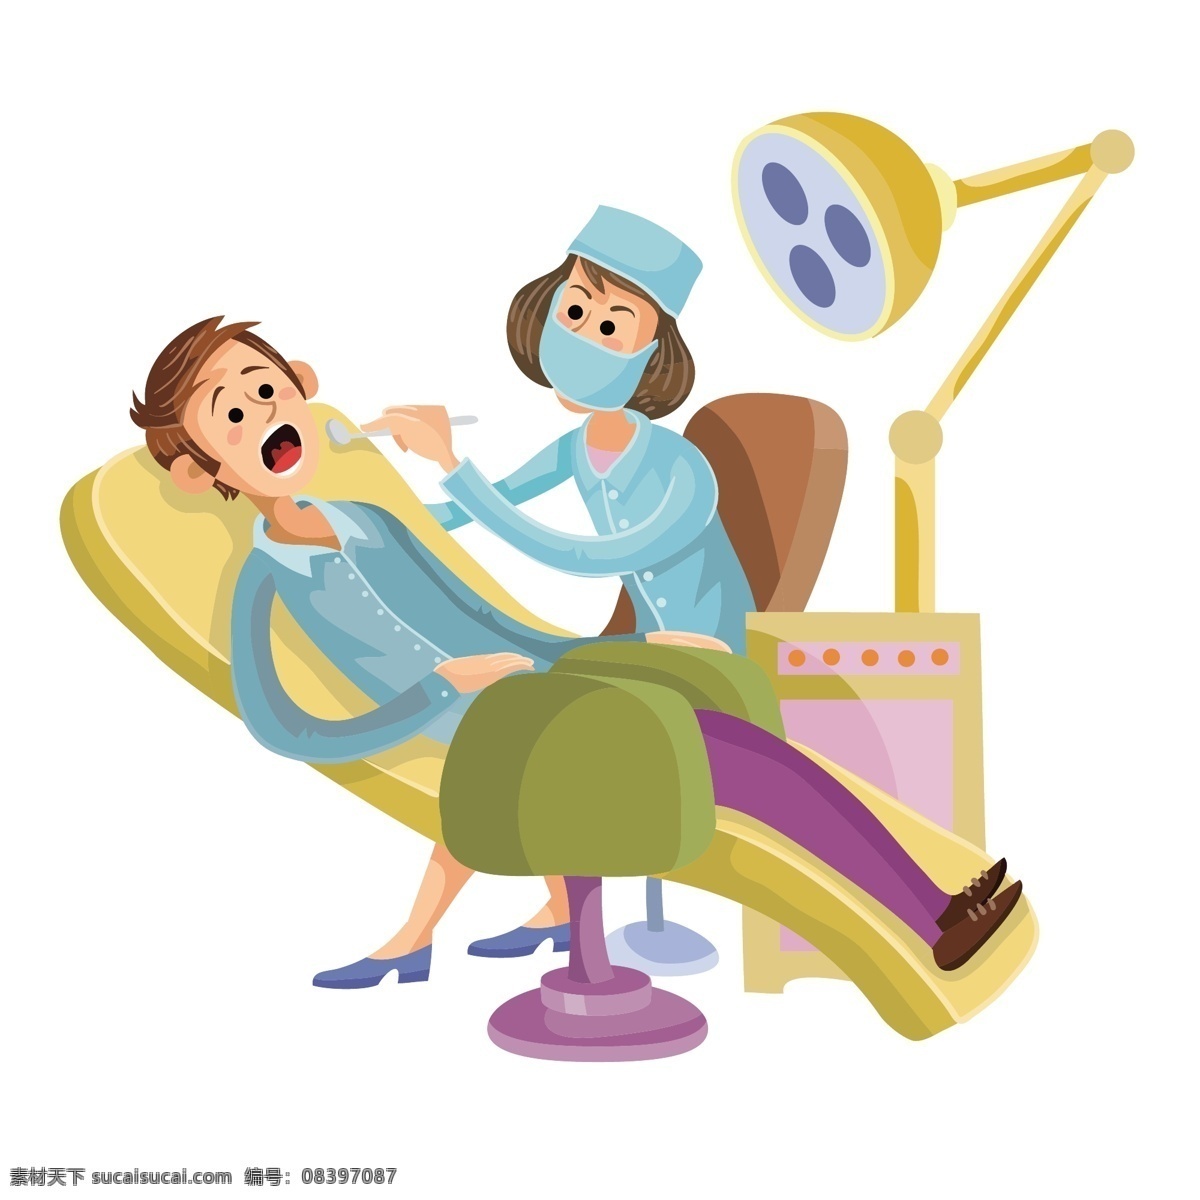 卡通 牙科 病人 矢量 牙科病人 牙齿 卡通病人 卡通医生 牙科科室 躺着的病人 躺着